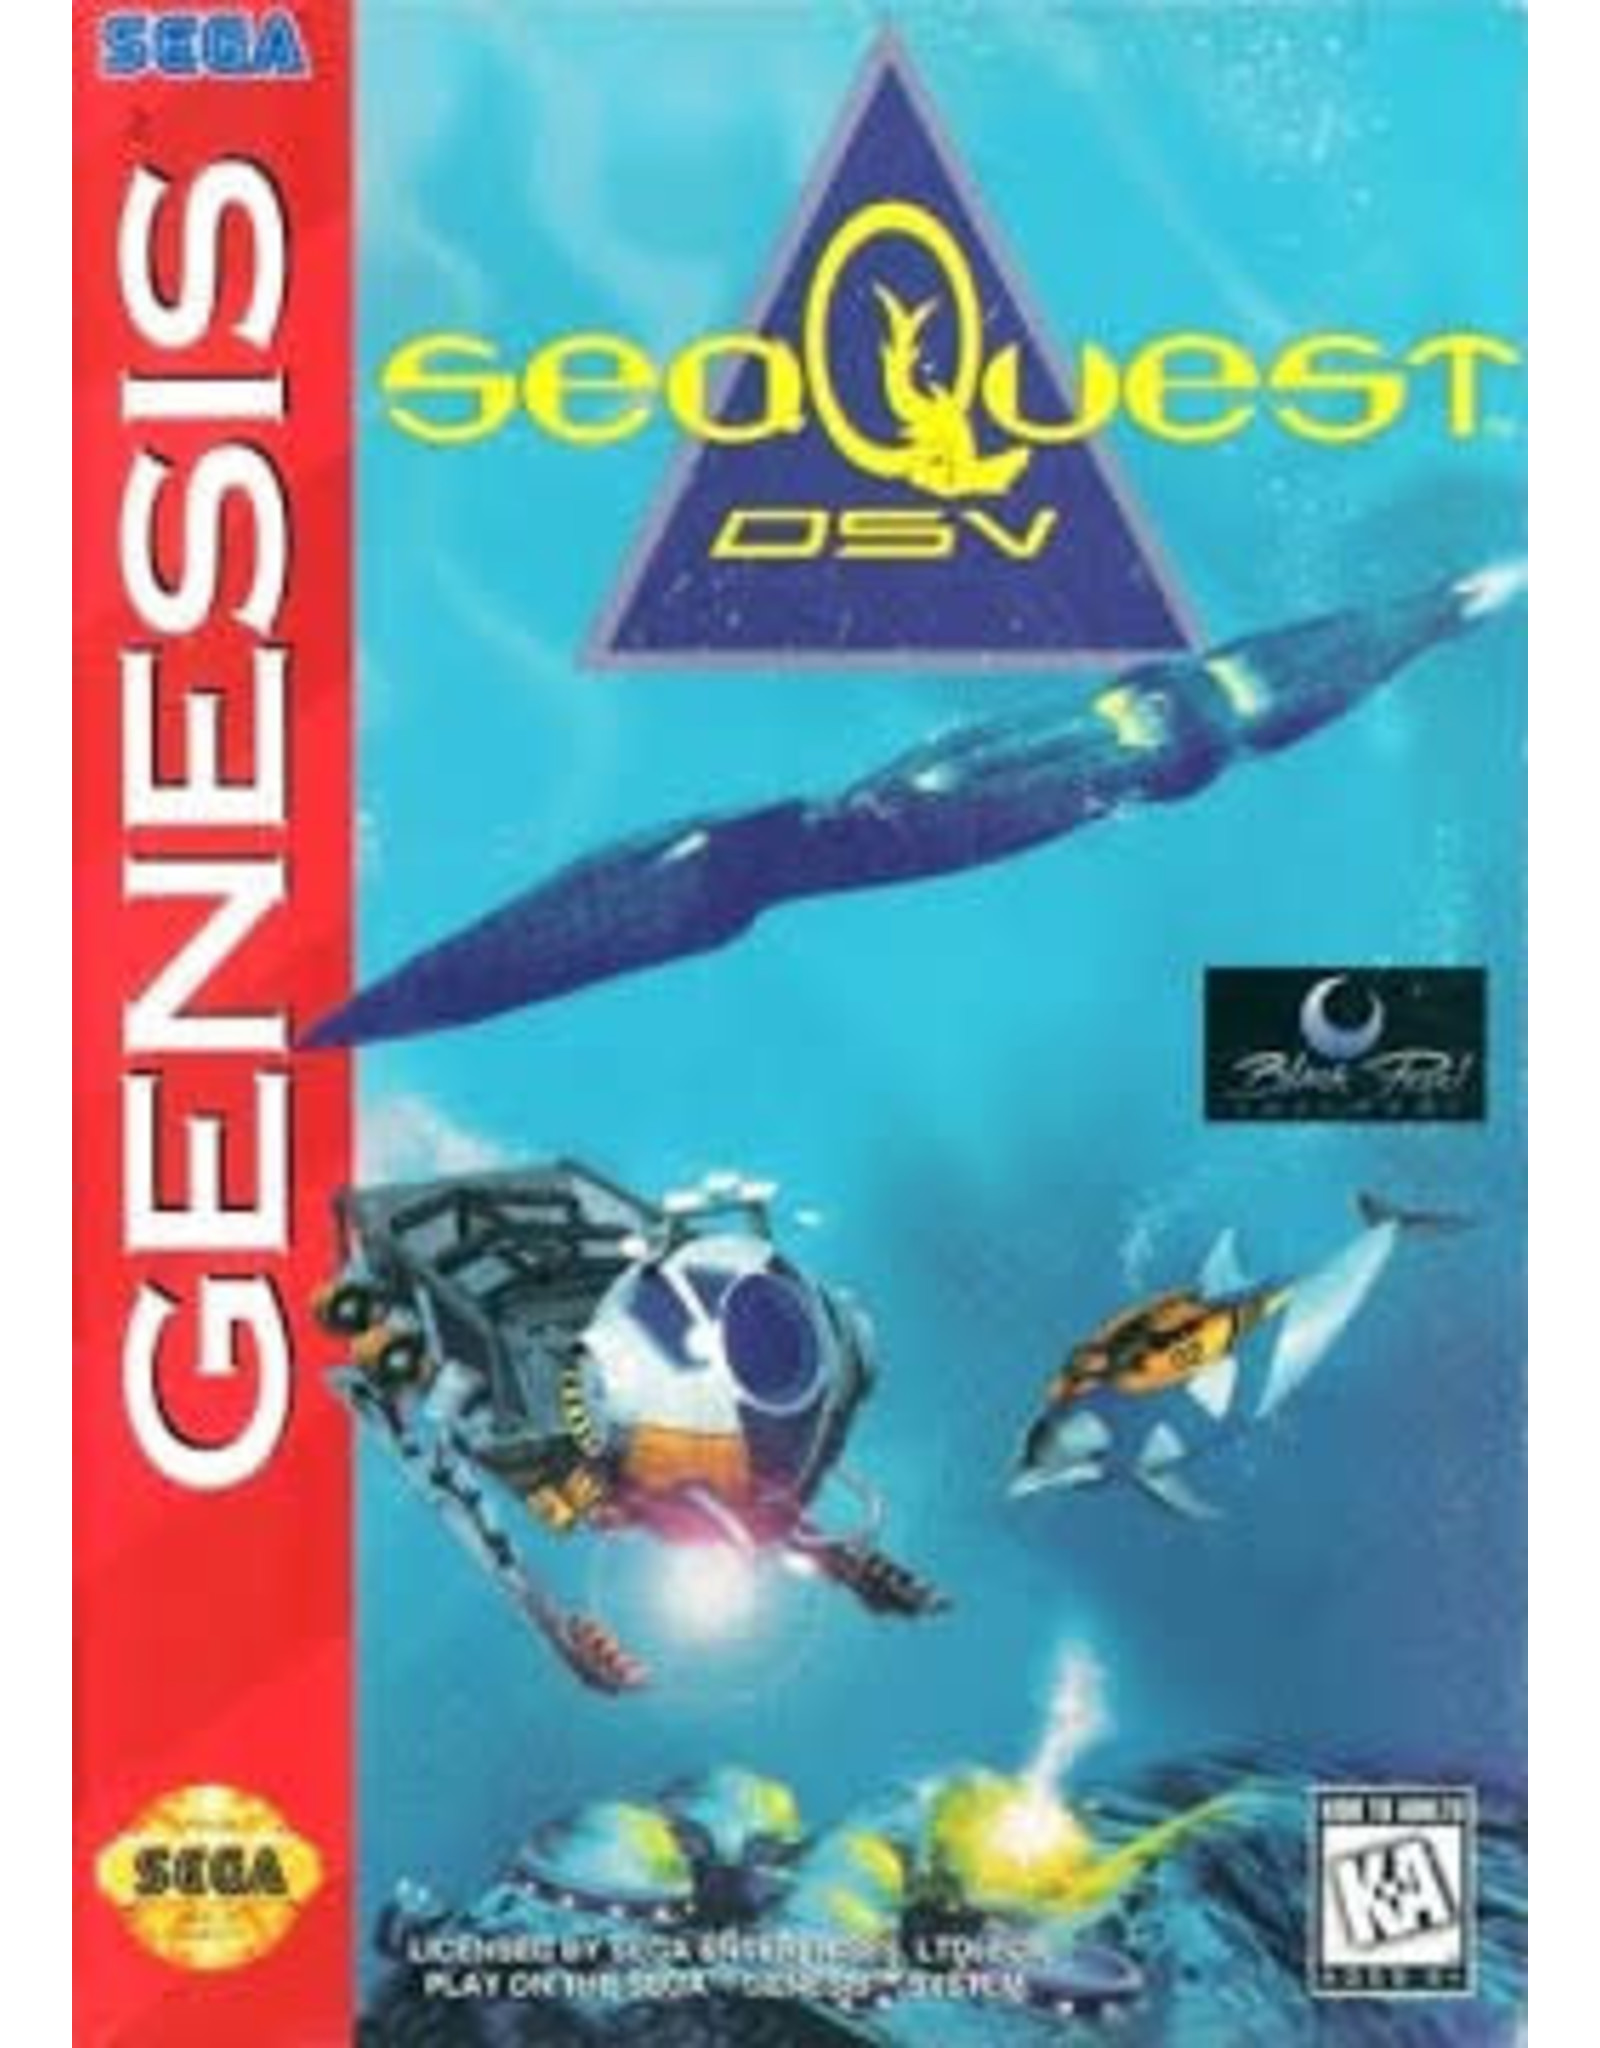 Sega Genesis SeaQuest DSV (Cart Only, Damaged Label)